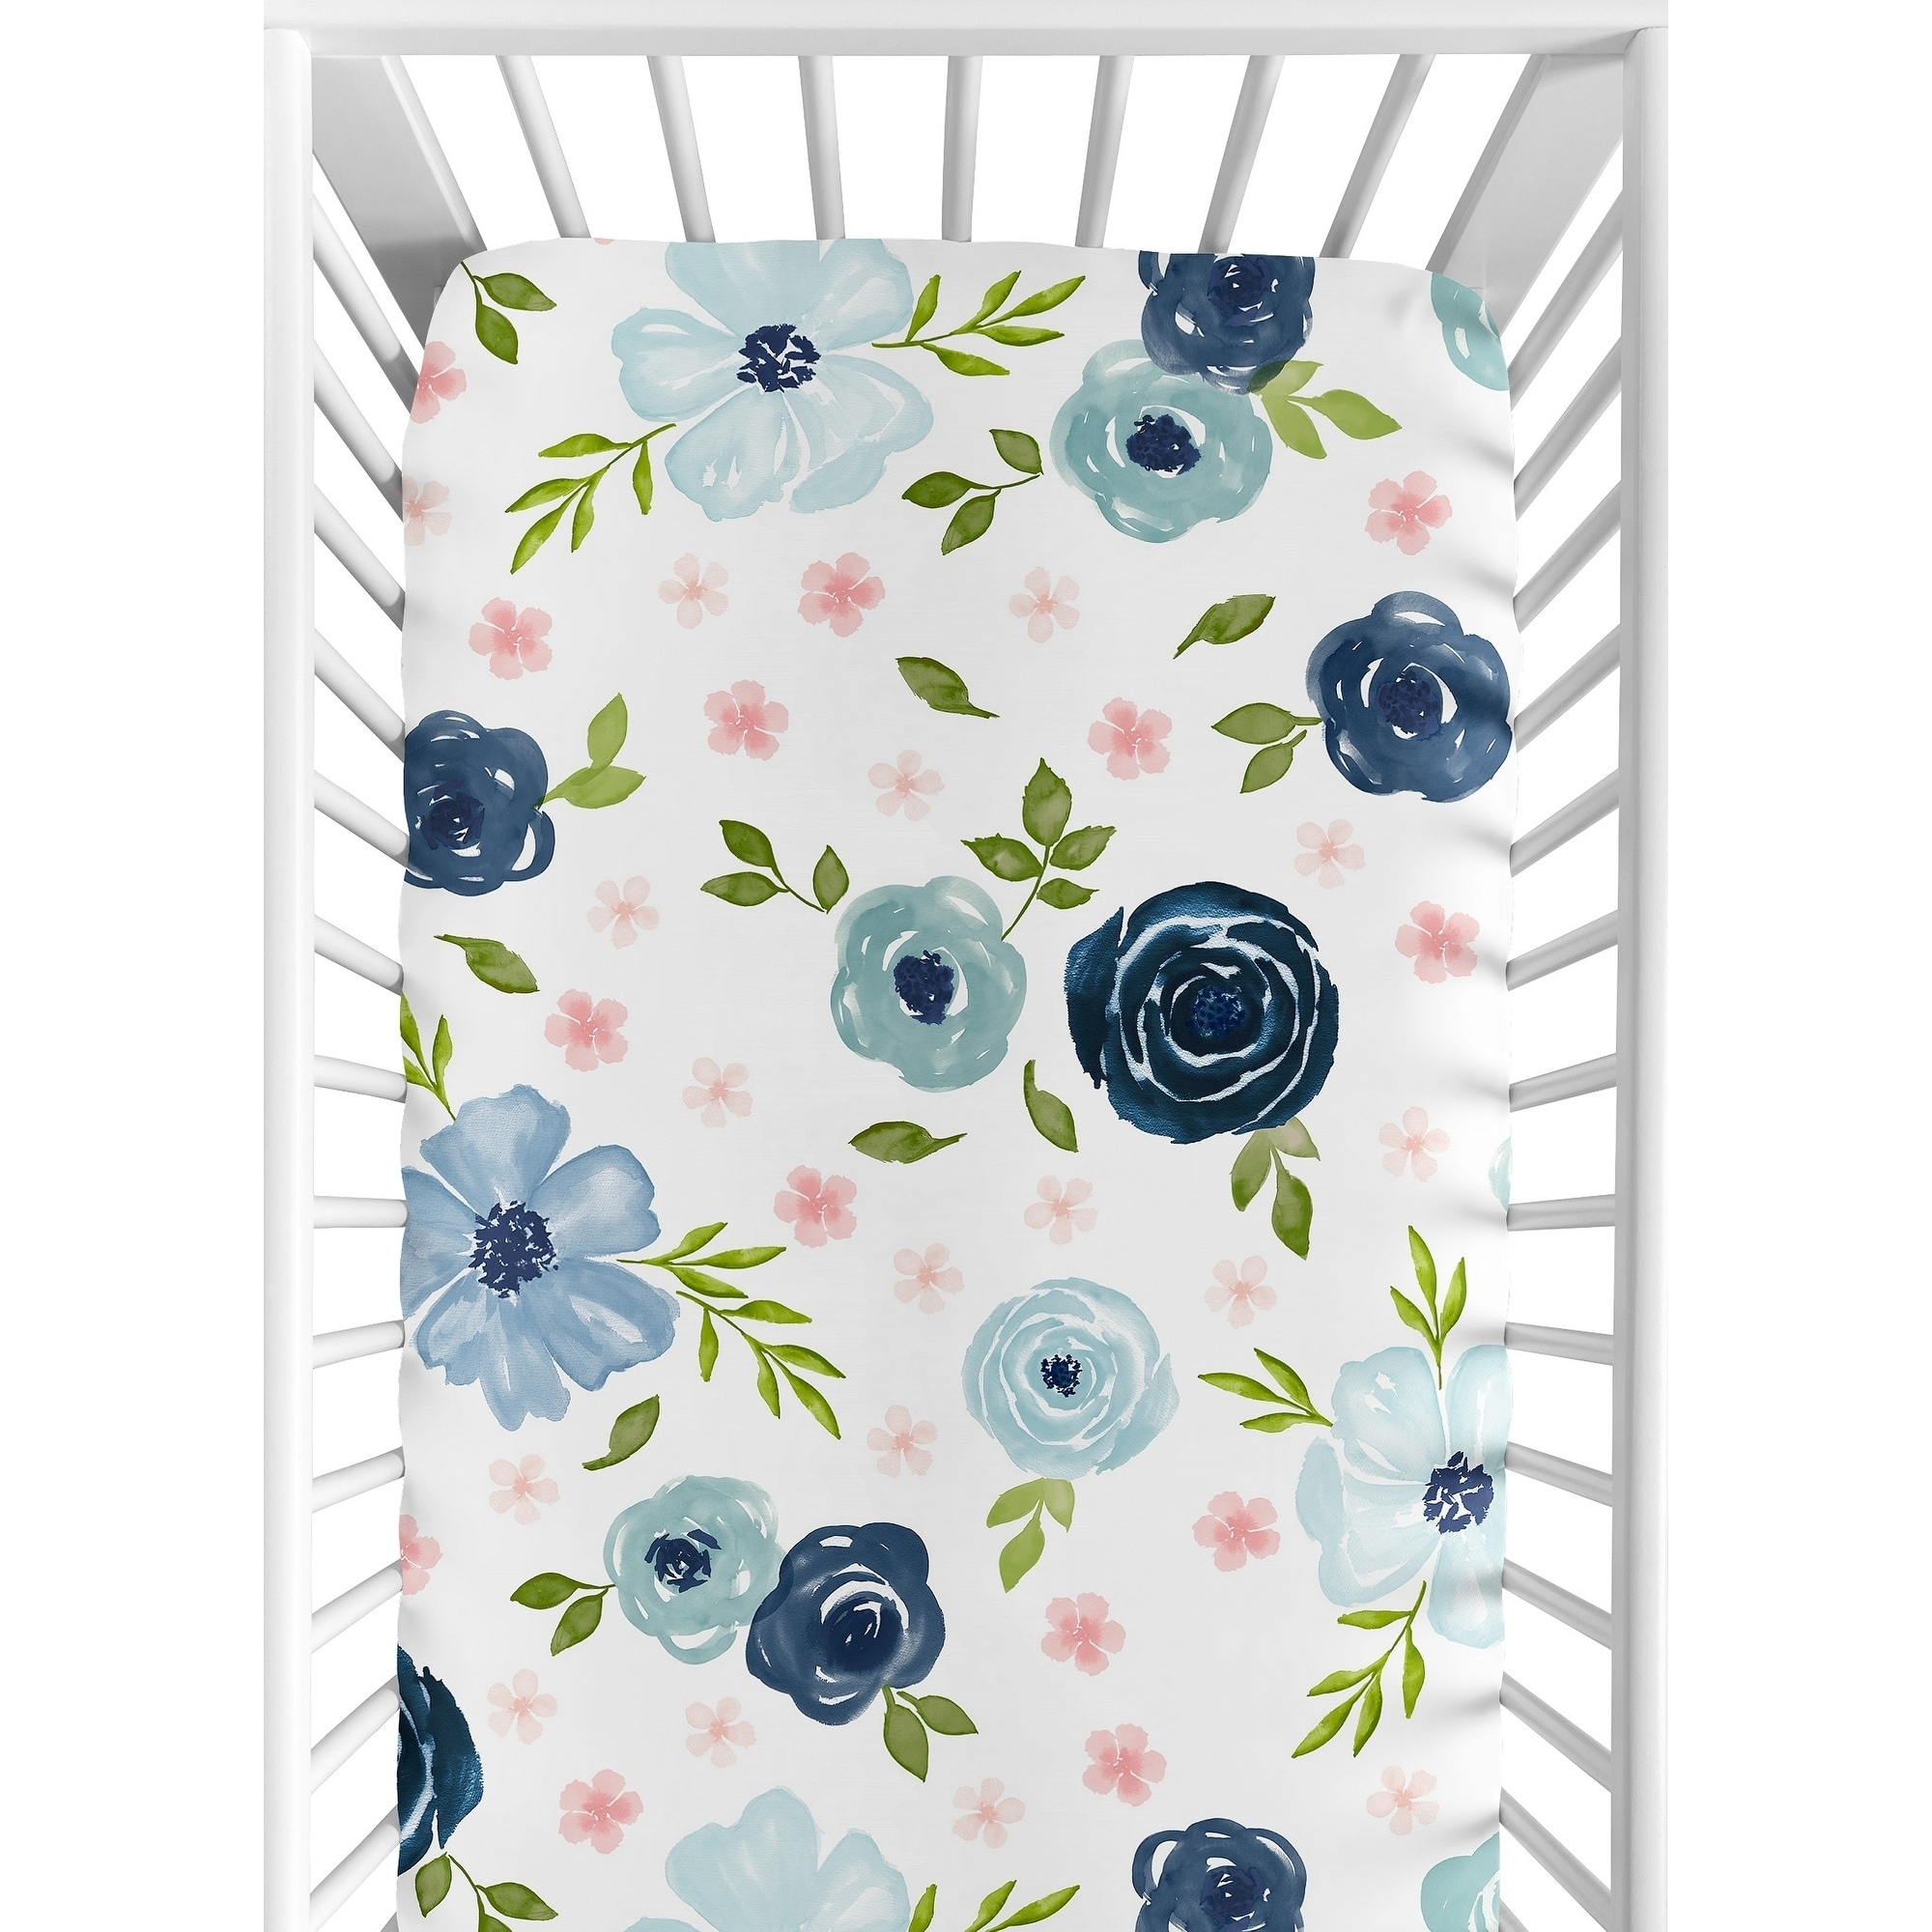 watercolor crib sheet